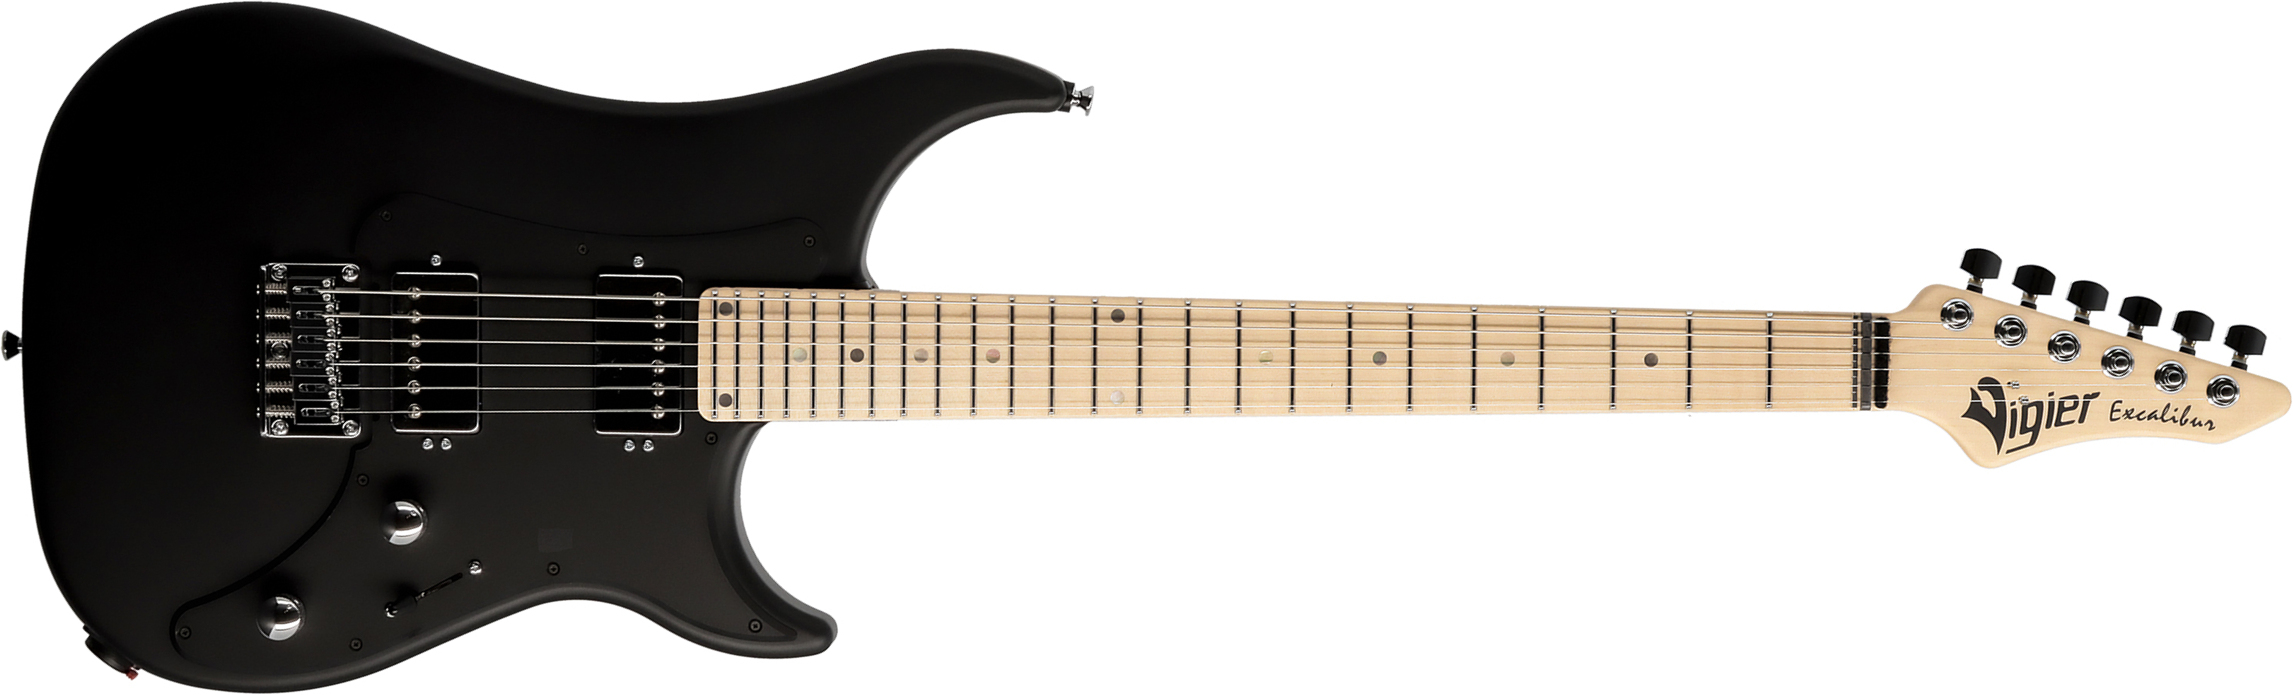 Vigier Excalibur Indus 2h Ht Mn - Black Matte - E-Gitarre in Str-Form - Main picture